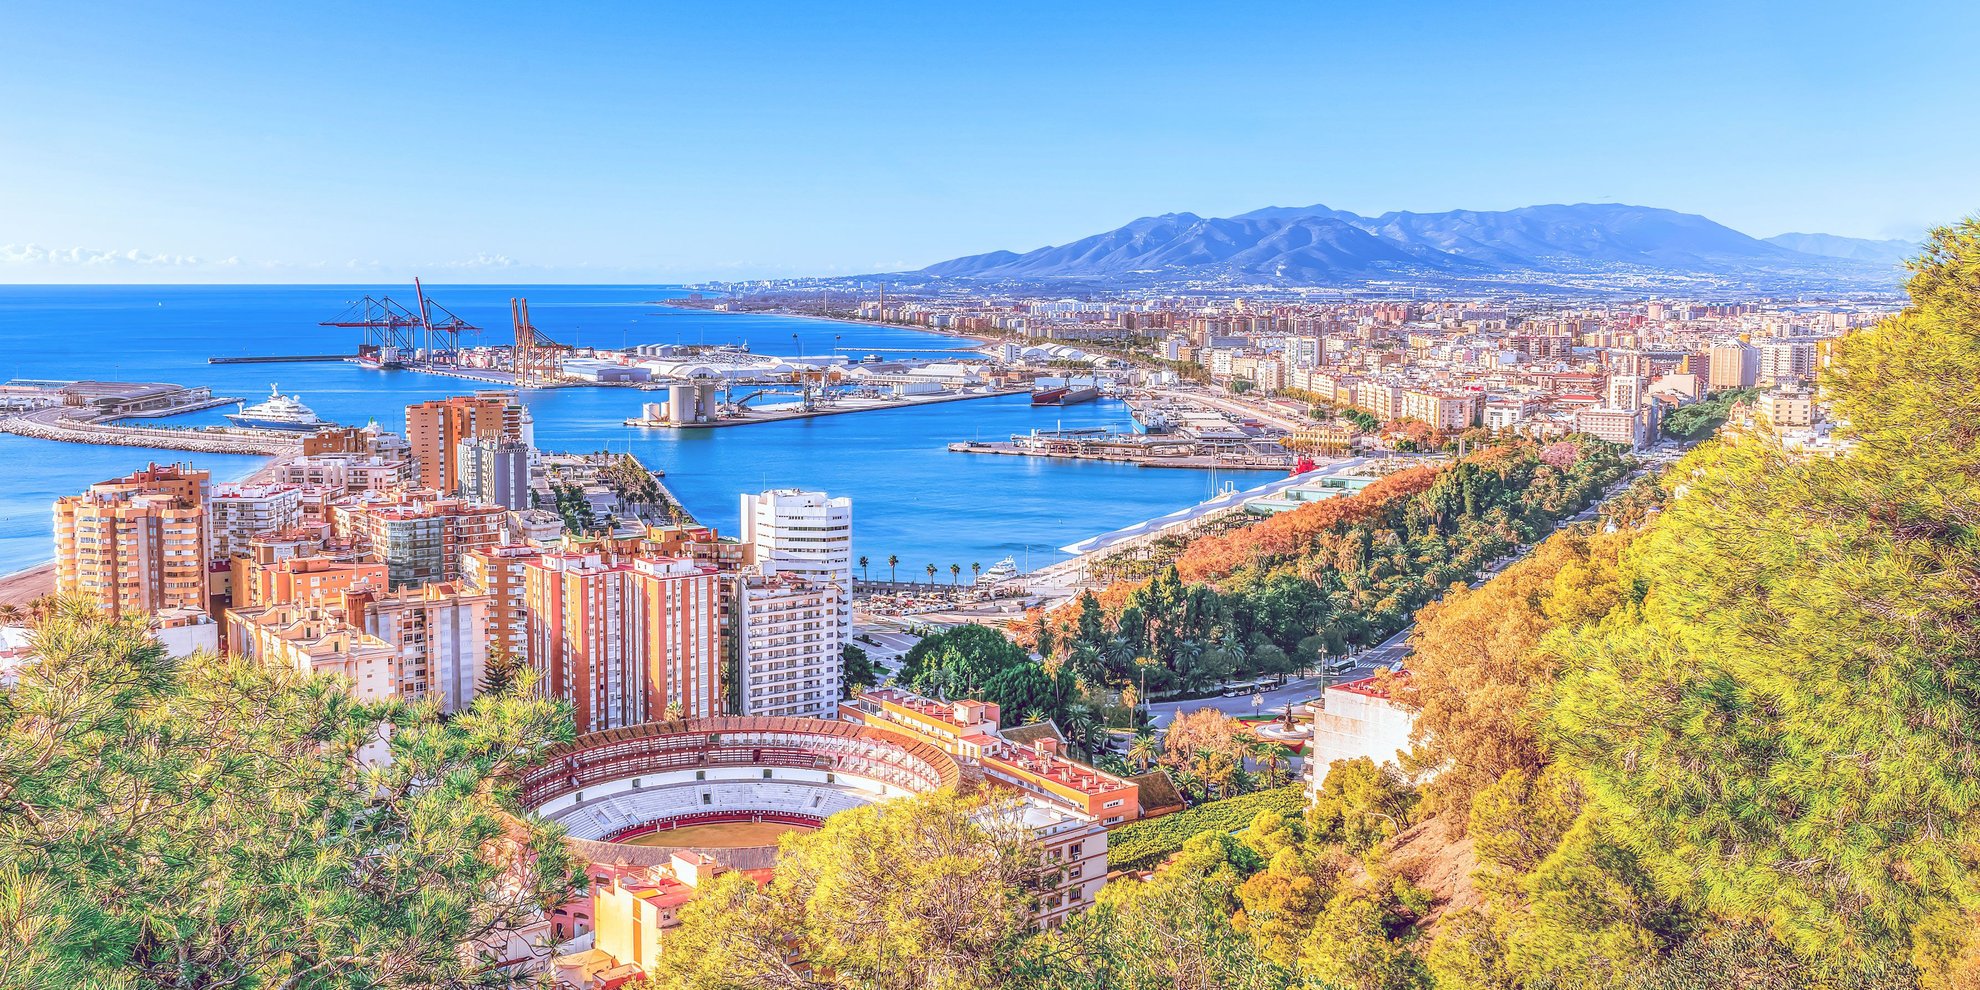 Urlaub in Málaga: Geheimtipps für deine Andalusien-Reise